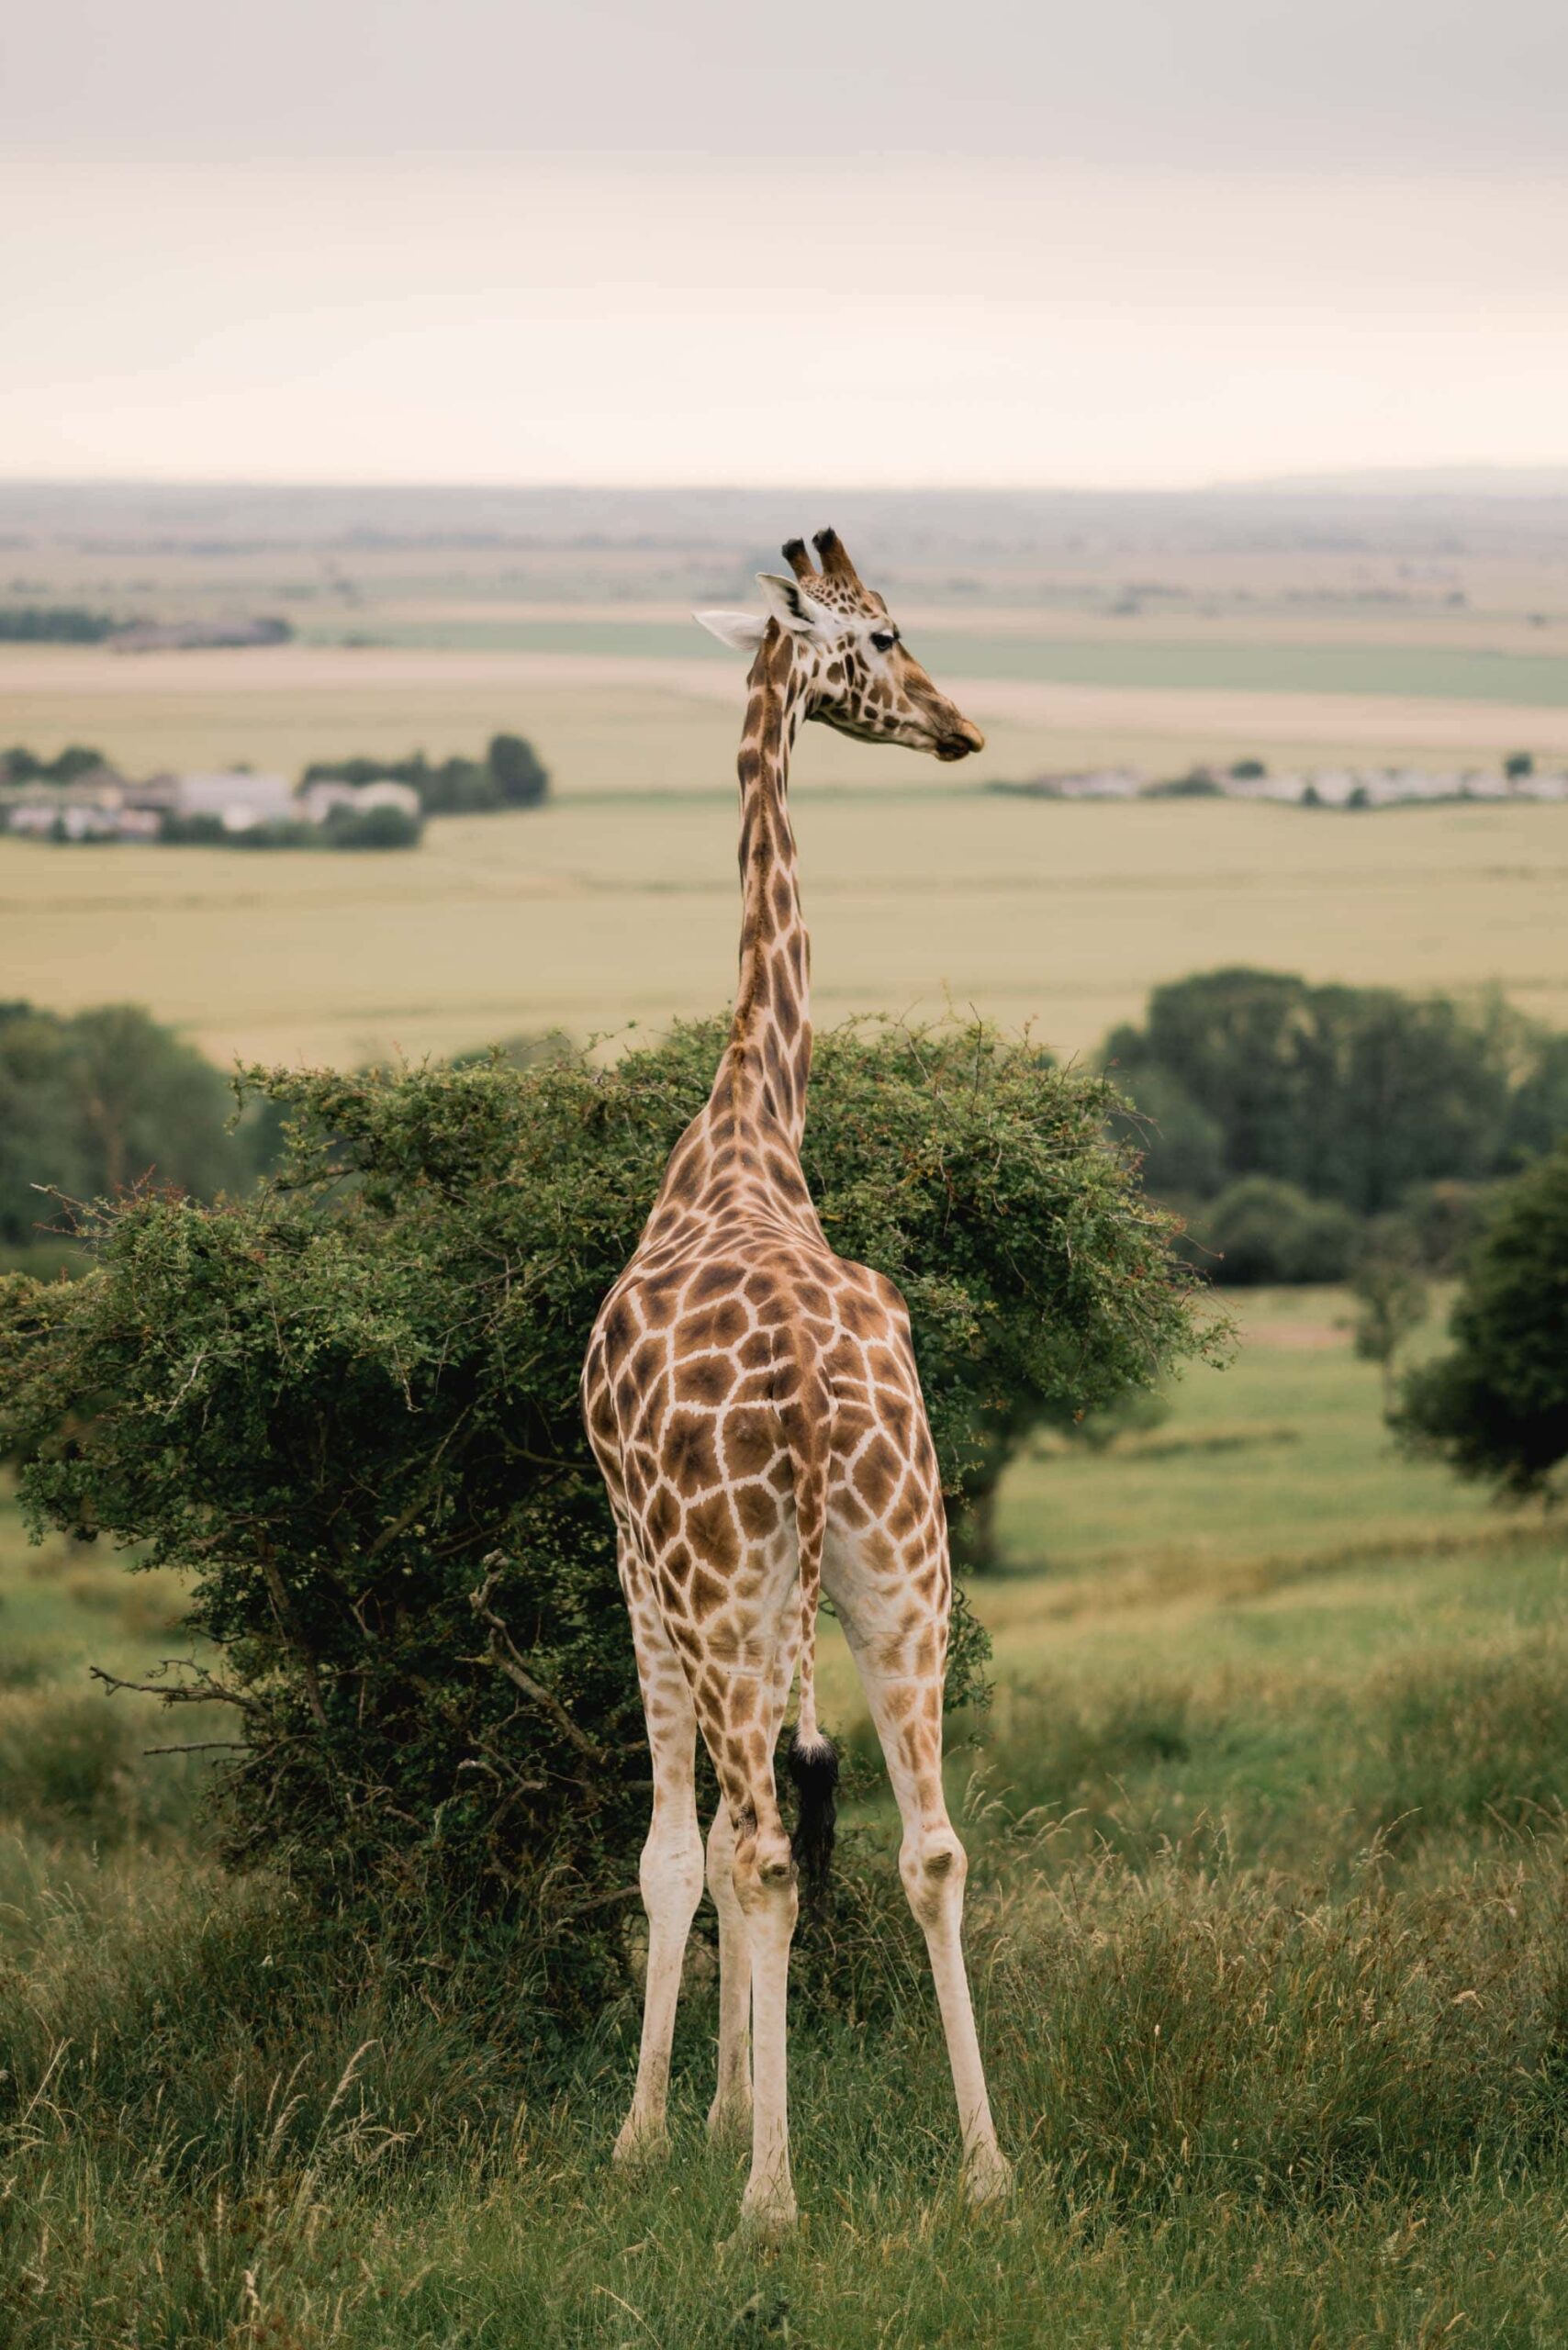 Giraffe at Port Lympne Safari Park in Kent.